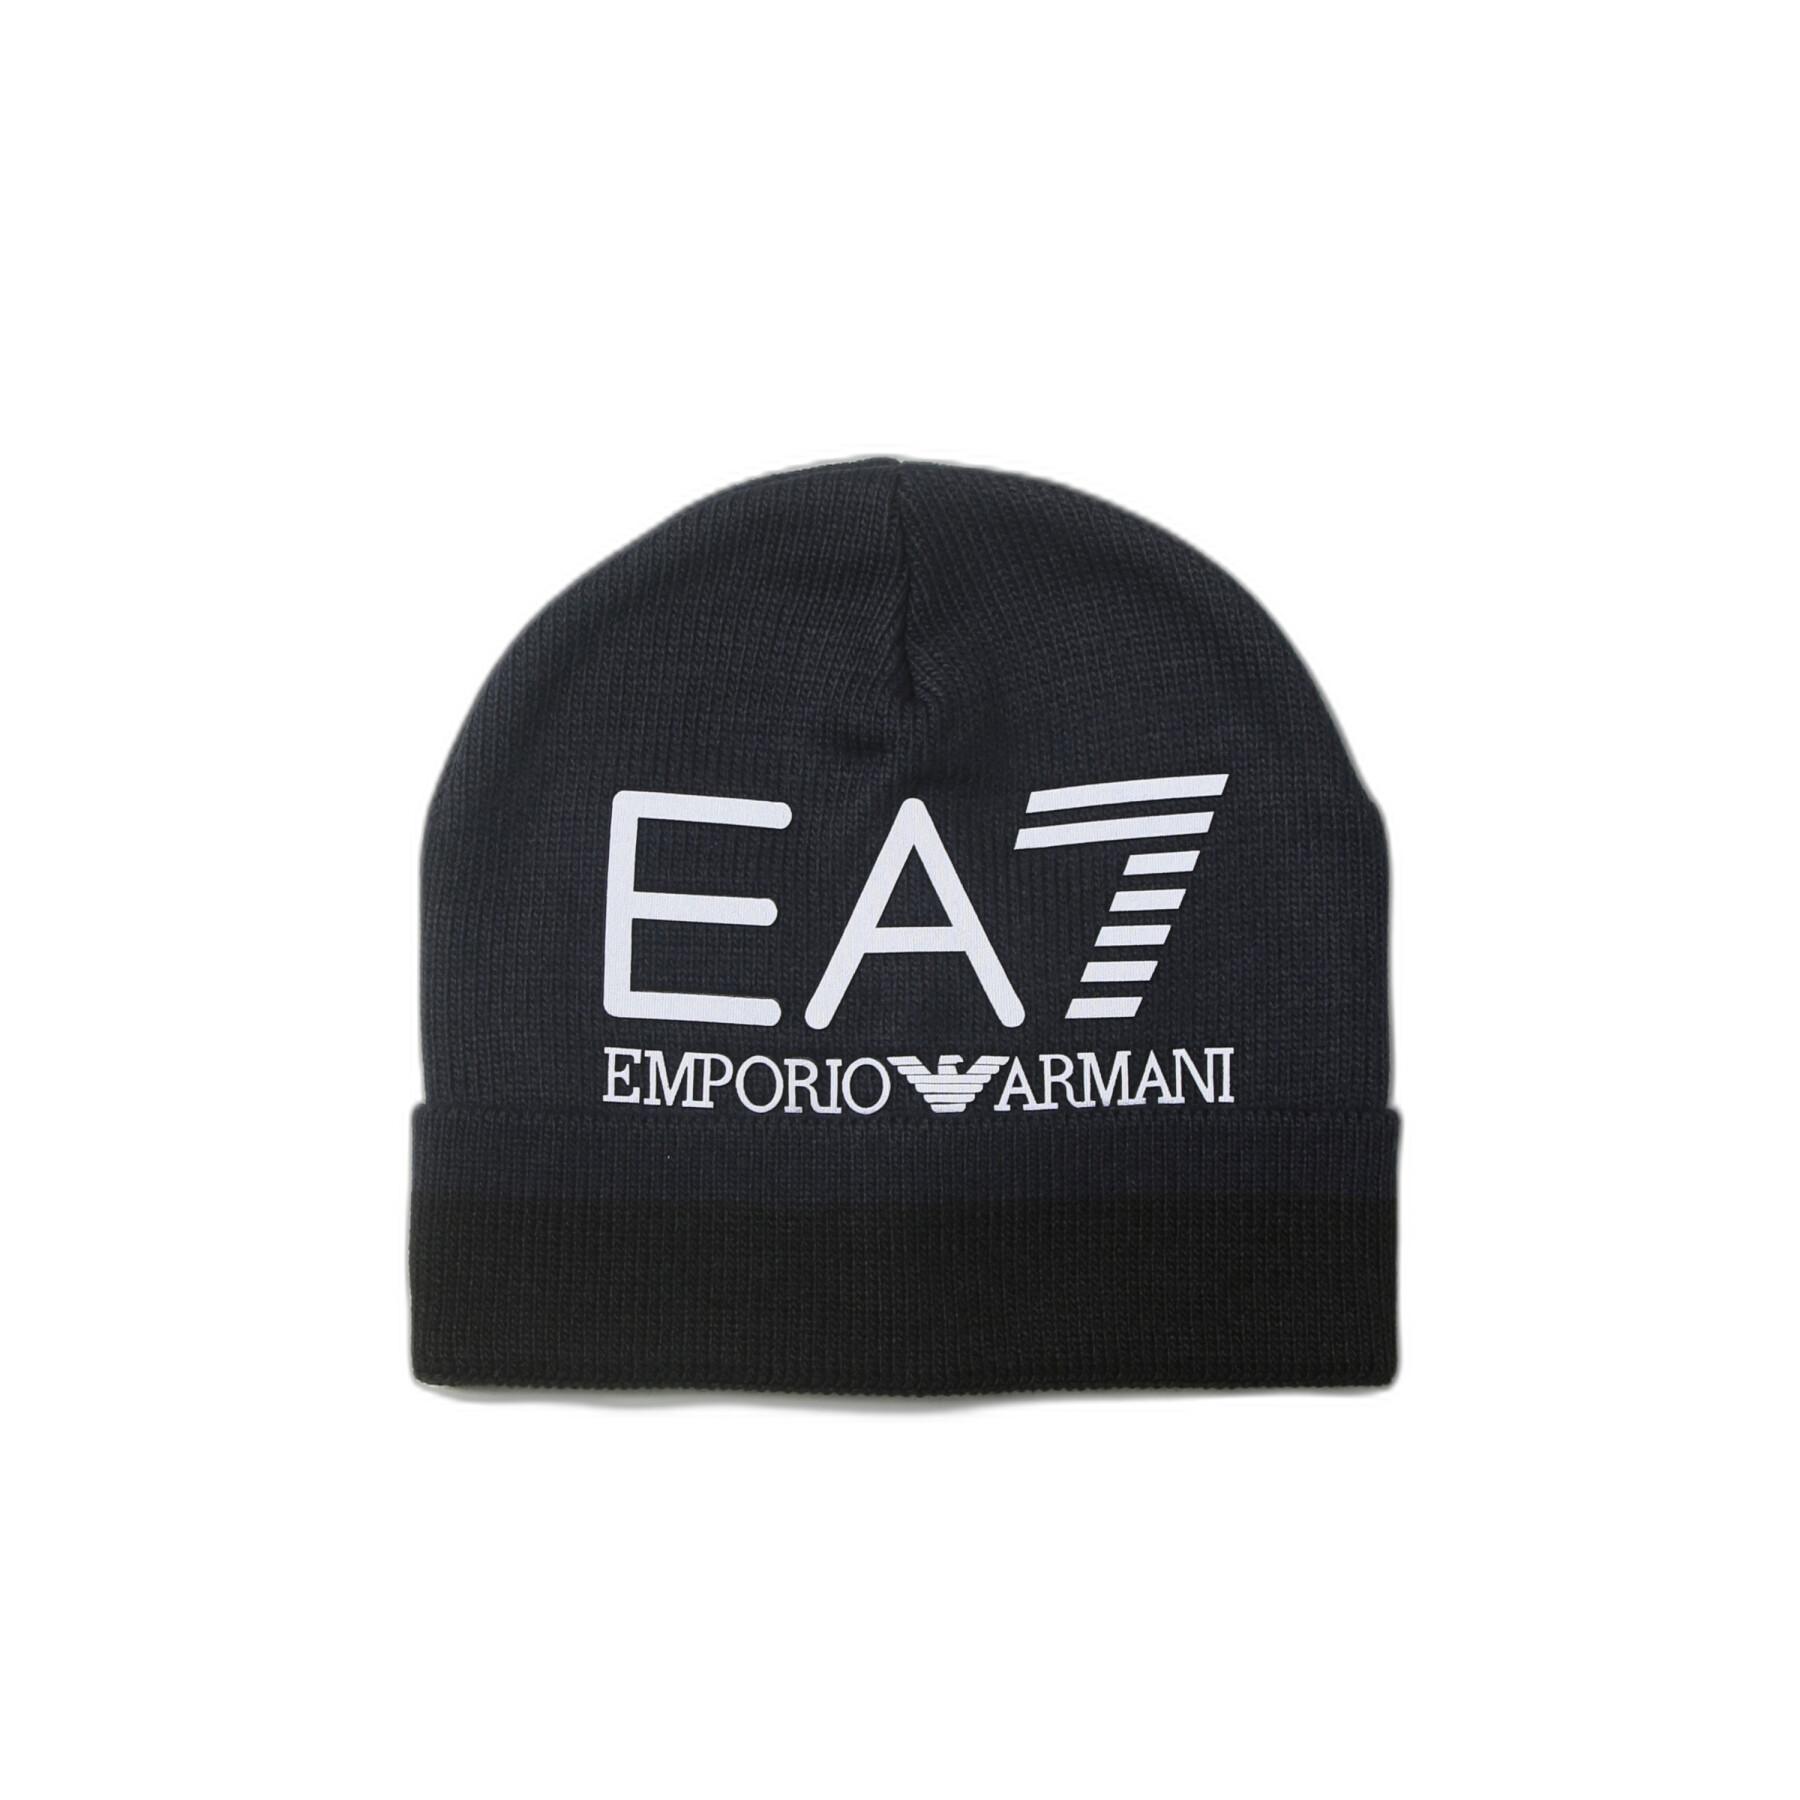 Cappello EA7 Emporio Armani